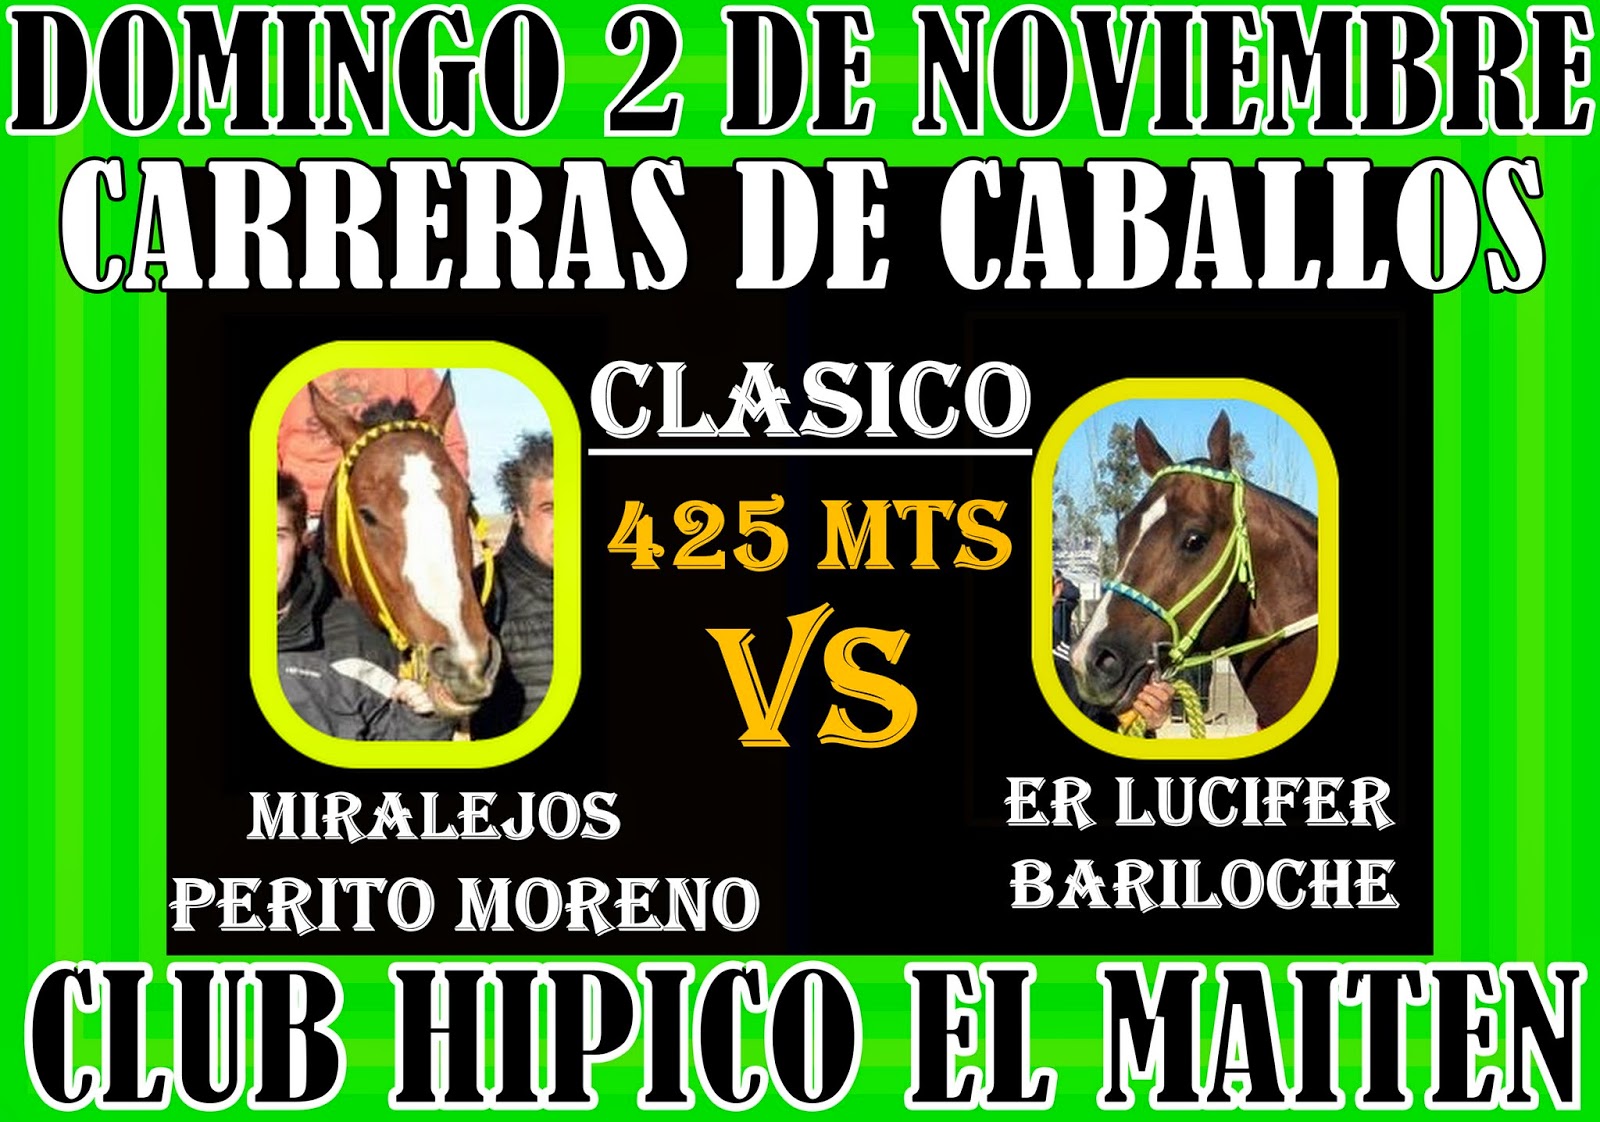 http://turfdelapatagonia.blogspot.com.ar/2014/10/0211-adelantos-de-carreras-de-caballos.html